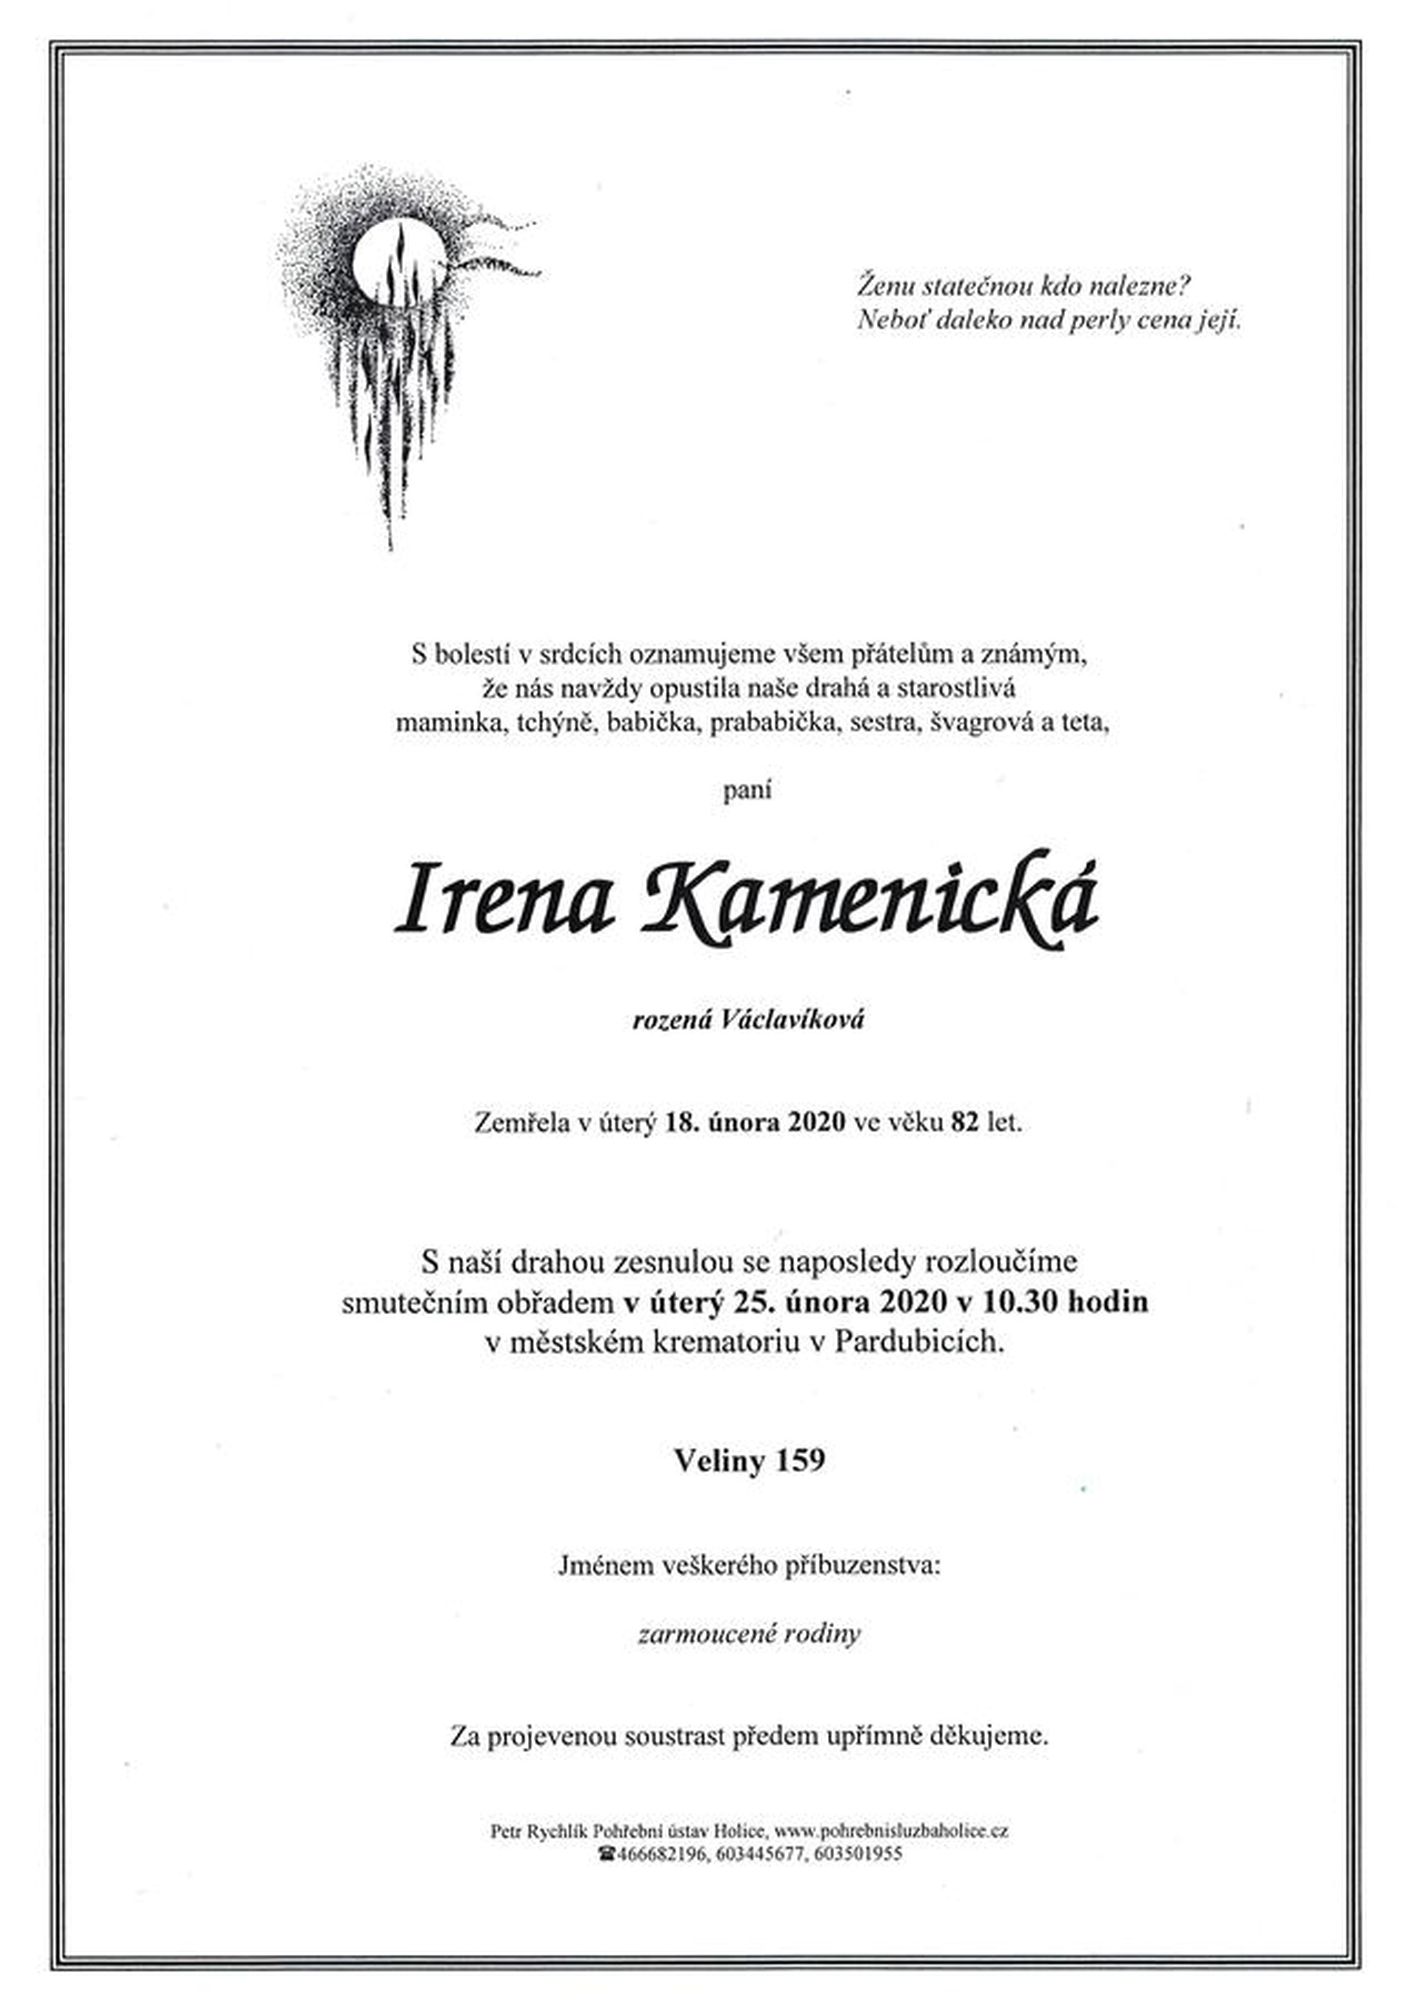 Irena Kamenická